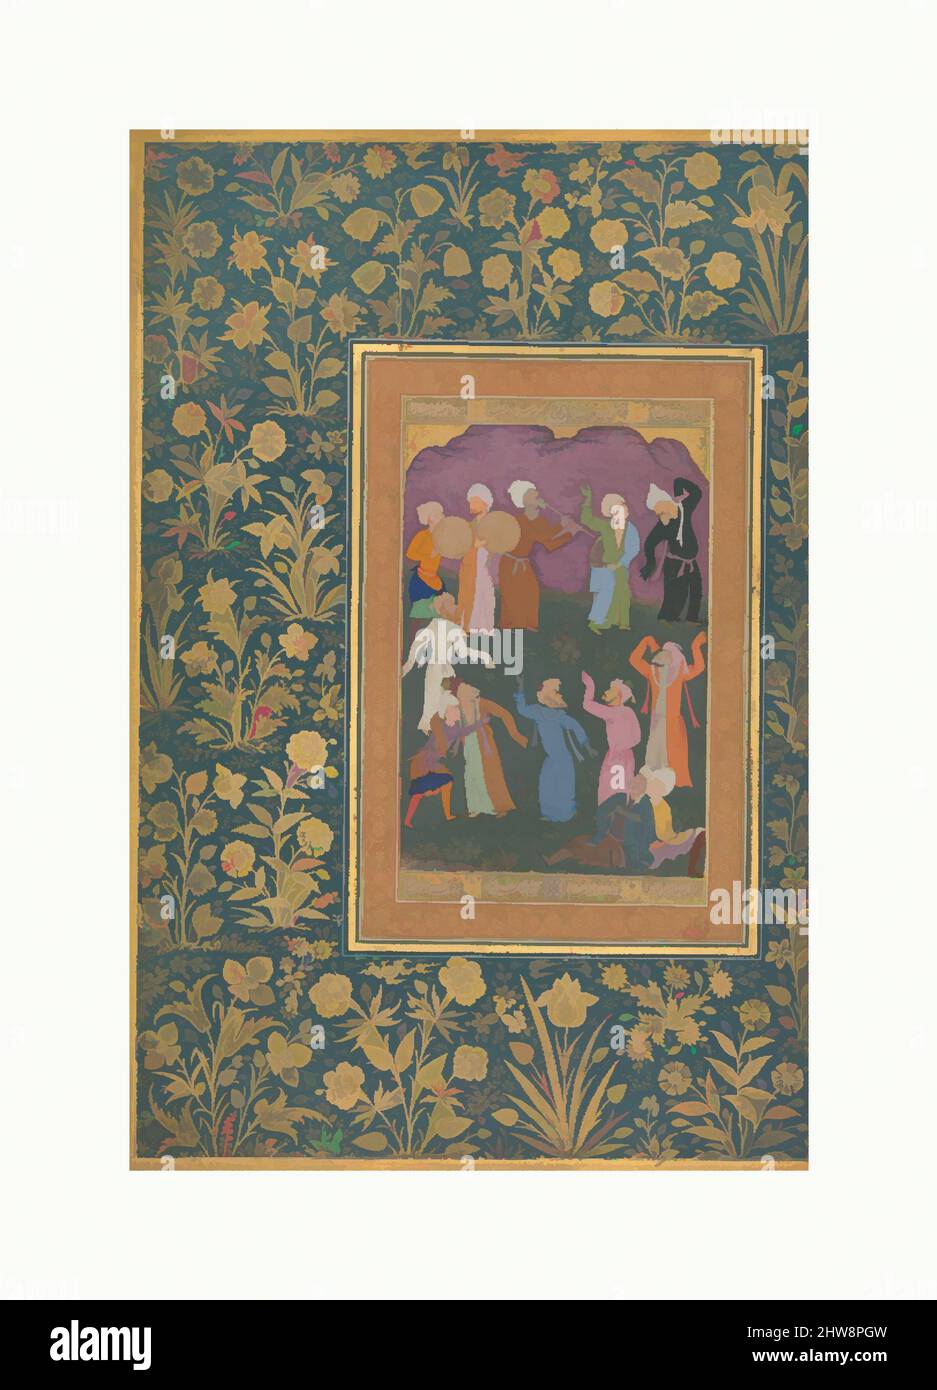 Kunst inspiriert von Dancing Dervishes', Folio aus dem Shah Jahan Album, recto: Ca. 1610; verso: Ca. 1530–50, Indien zugeschrieben, Tinte, opakes Aquarell und Gold auf Papier, H. 15 3/16 Zoll (38,6 cm), Codices, das „Emperor’s Album“, zu dem dieses Folio gehört, wurde für Kaiser angefertigt, klassische Werke, die von Artotop mit einem Schuss Modernität modernisiert wurden. Formen, Farbe und Wert, auffällige visuelle Wirkung auf Kunst. Emotionen durch Freiheit von Kunstwerken auf zeitgemäße Weise. Eine zeitlose Botschaft, die eine wild kreative neue Richtung verfolgt. Künstler, die sich dem digitalen Medium zuwenden und die Artotop NFT erschaffen Stockfoto